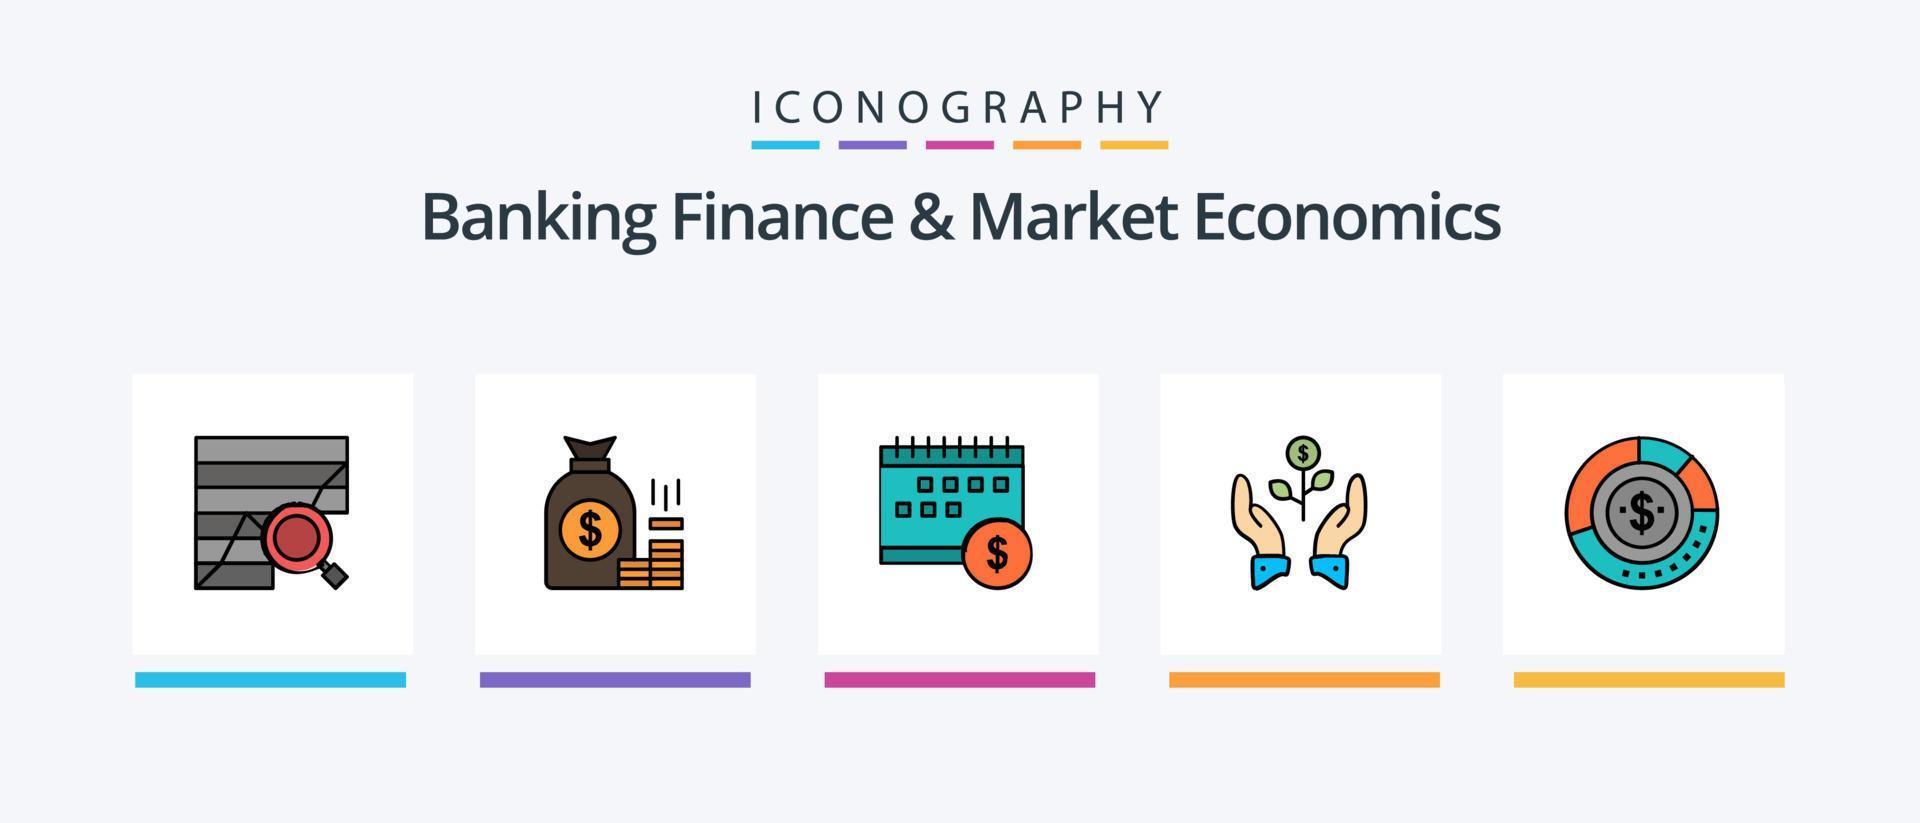 la línea de finanzas bancarias y economía de mercado llenó un paquete de 5 íconos que incluye finanzas. negocio. dinero. crecimiento. cartera. diseño de iconos creativos vector